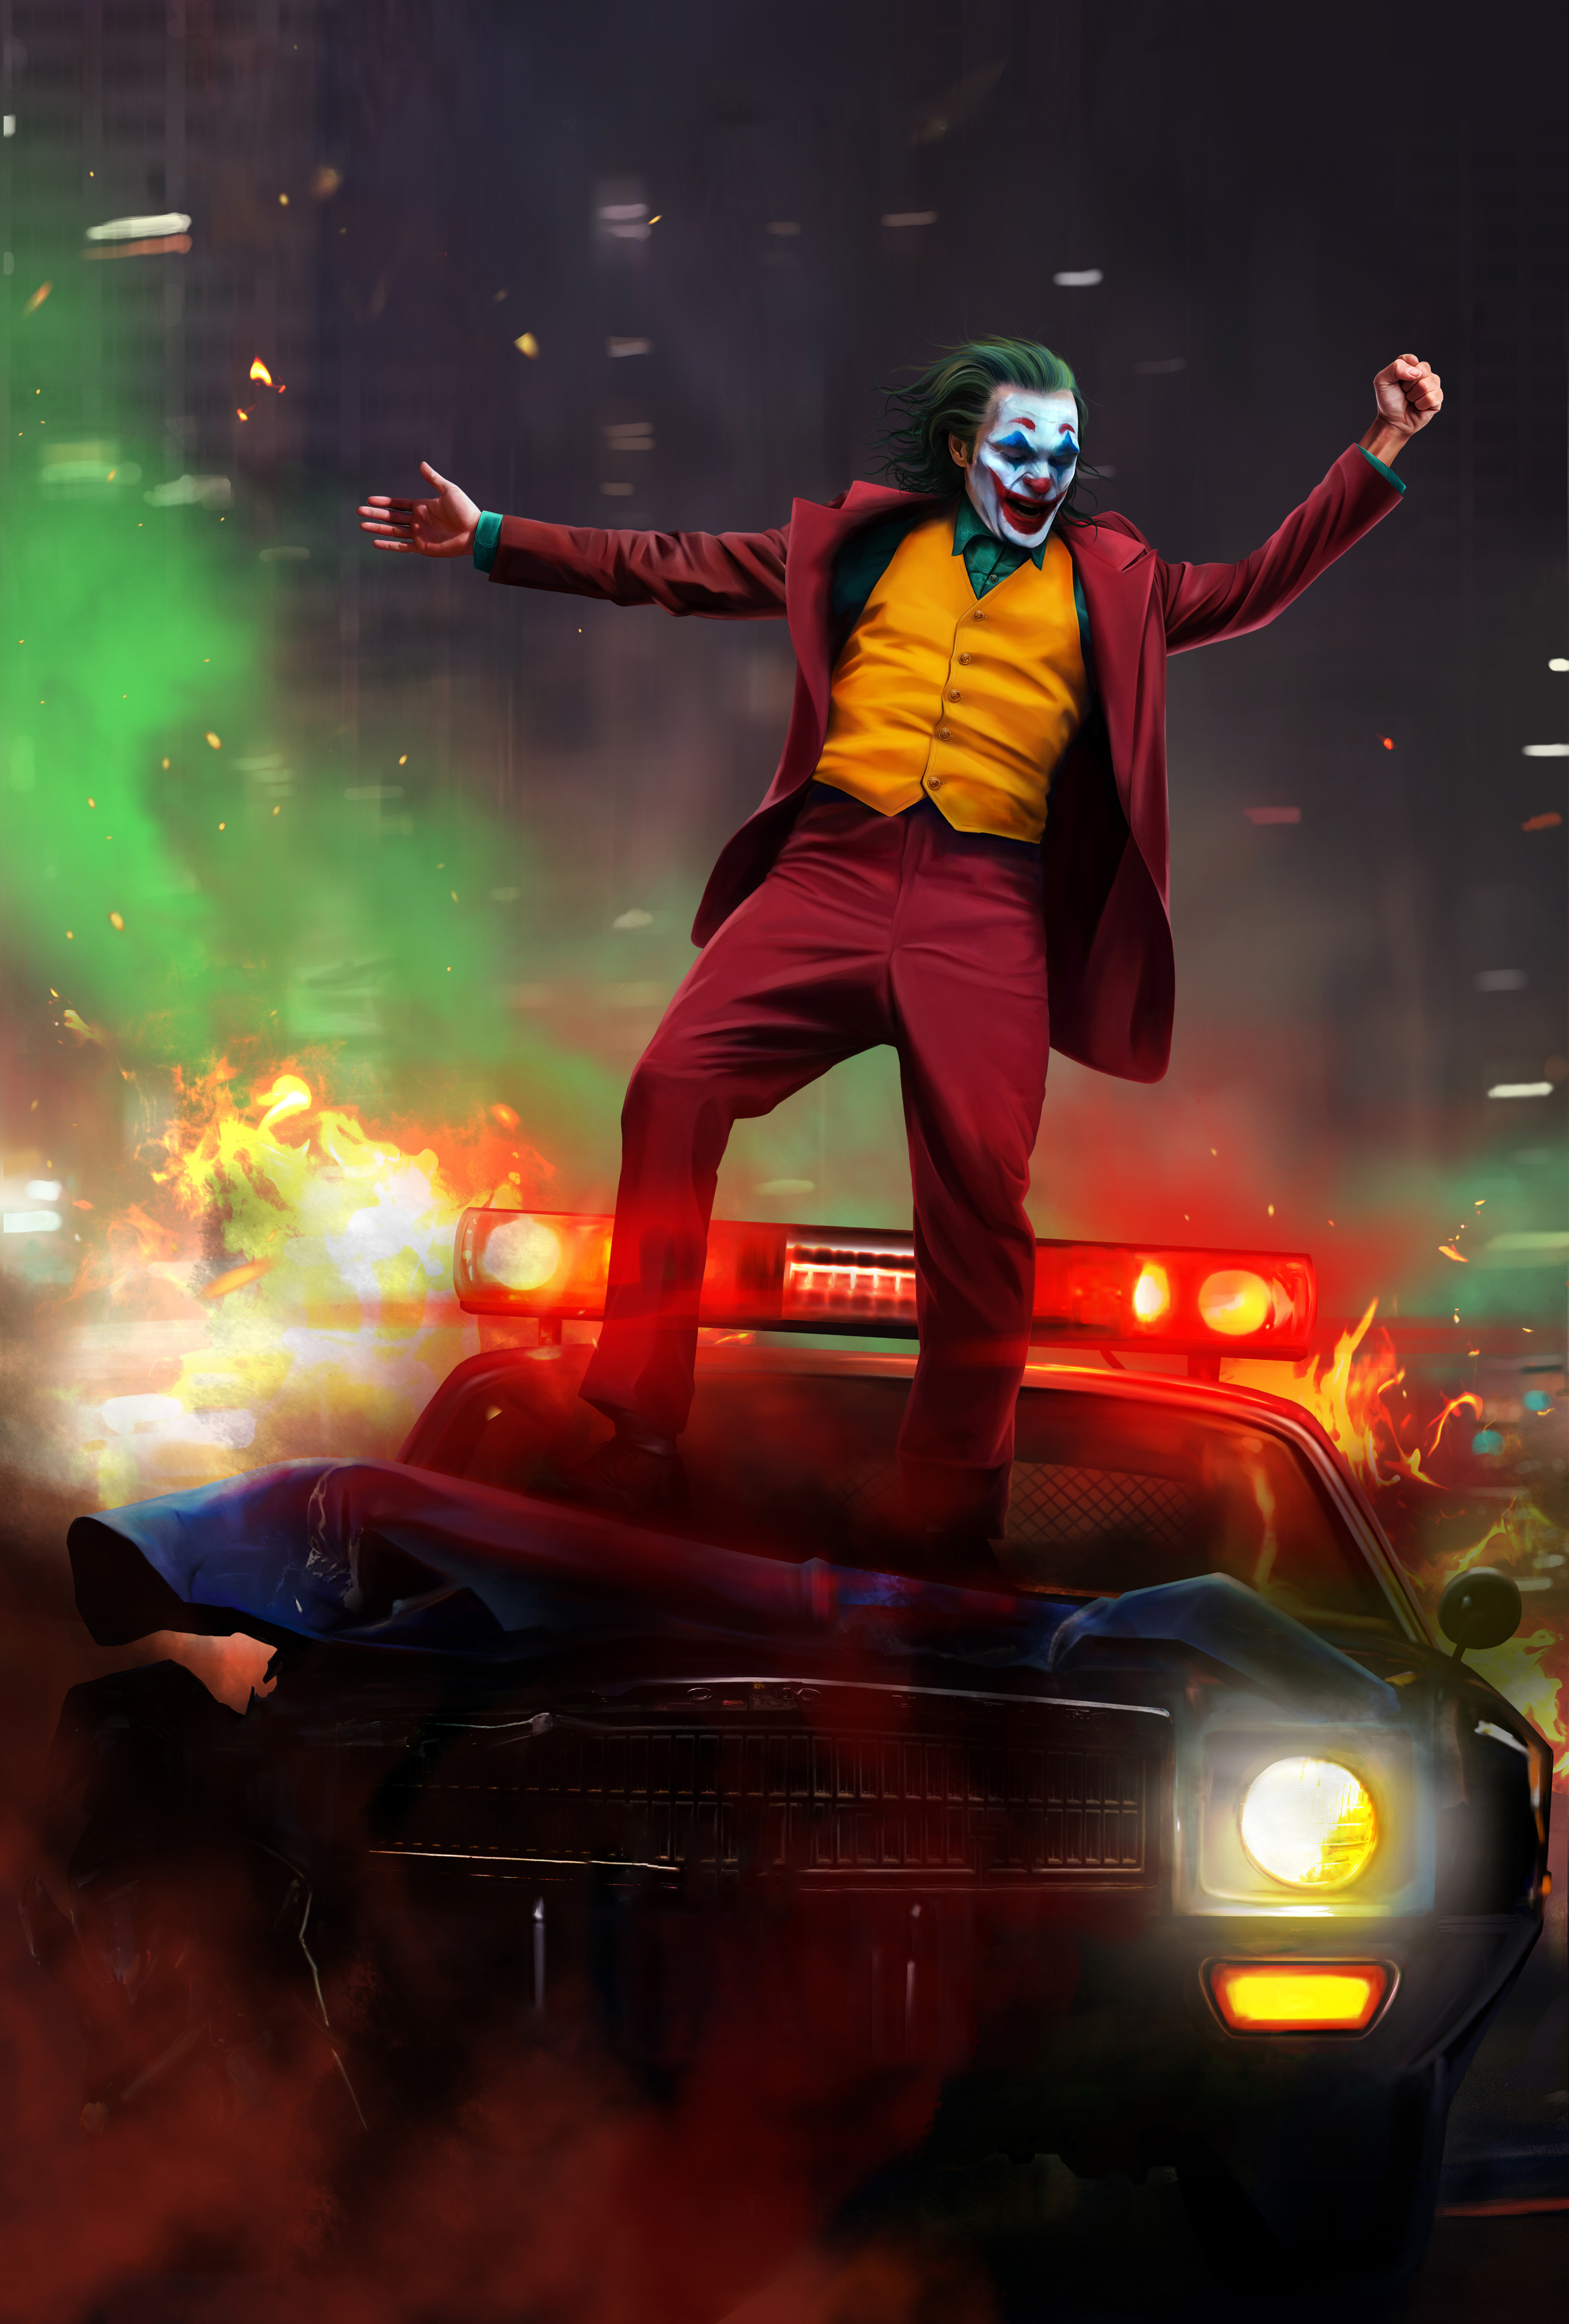 Joker 2019 Hd Wallpaper For Mobile